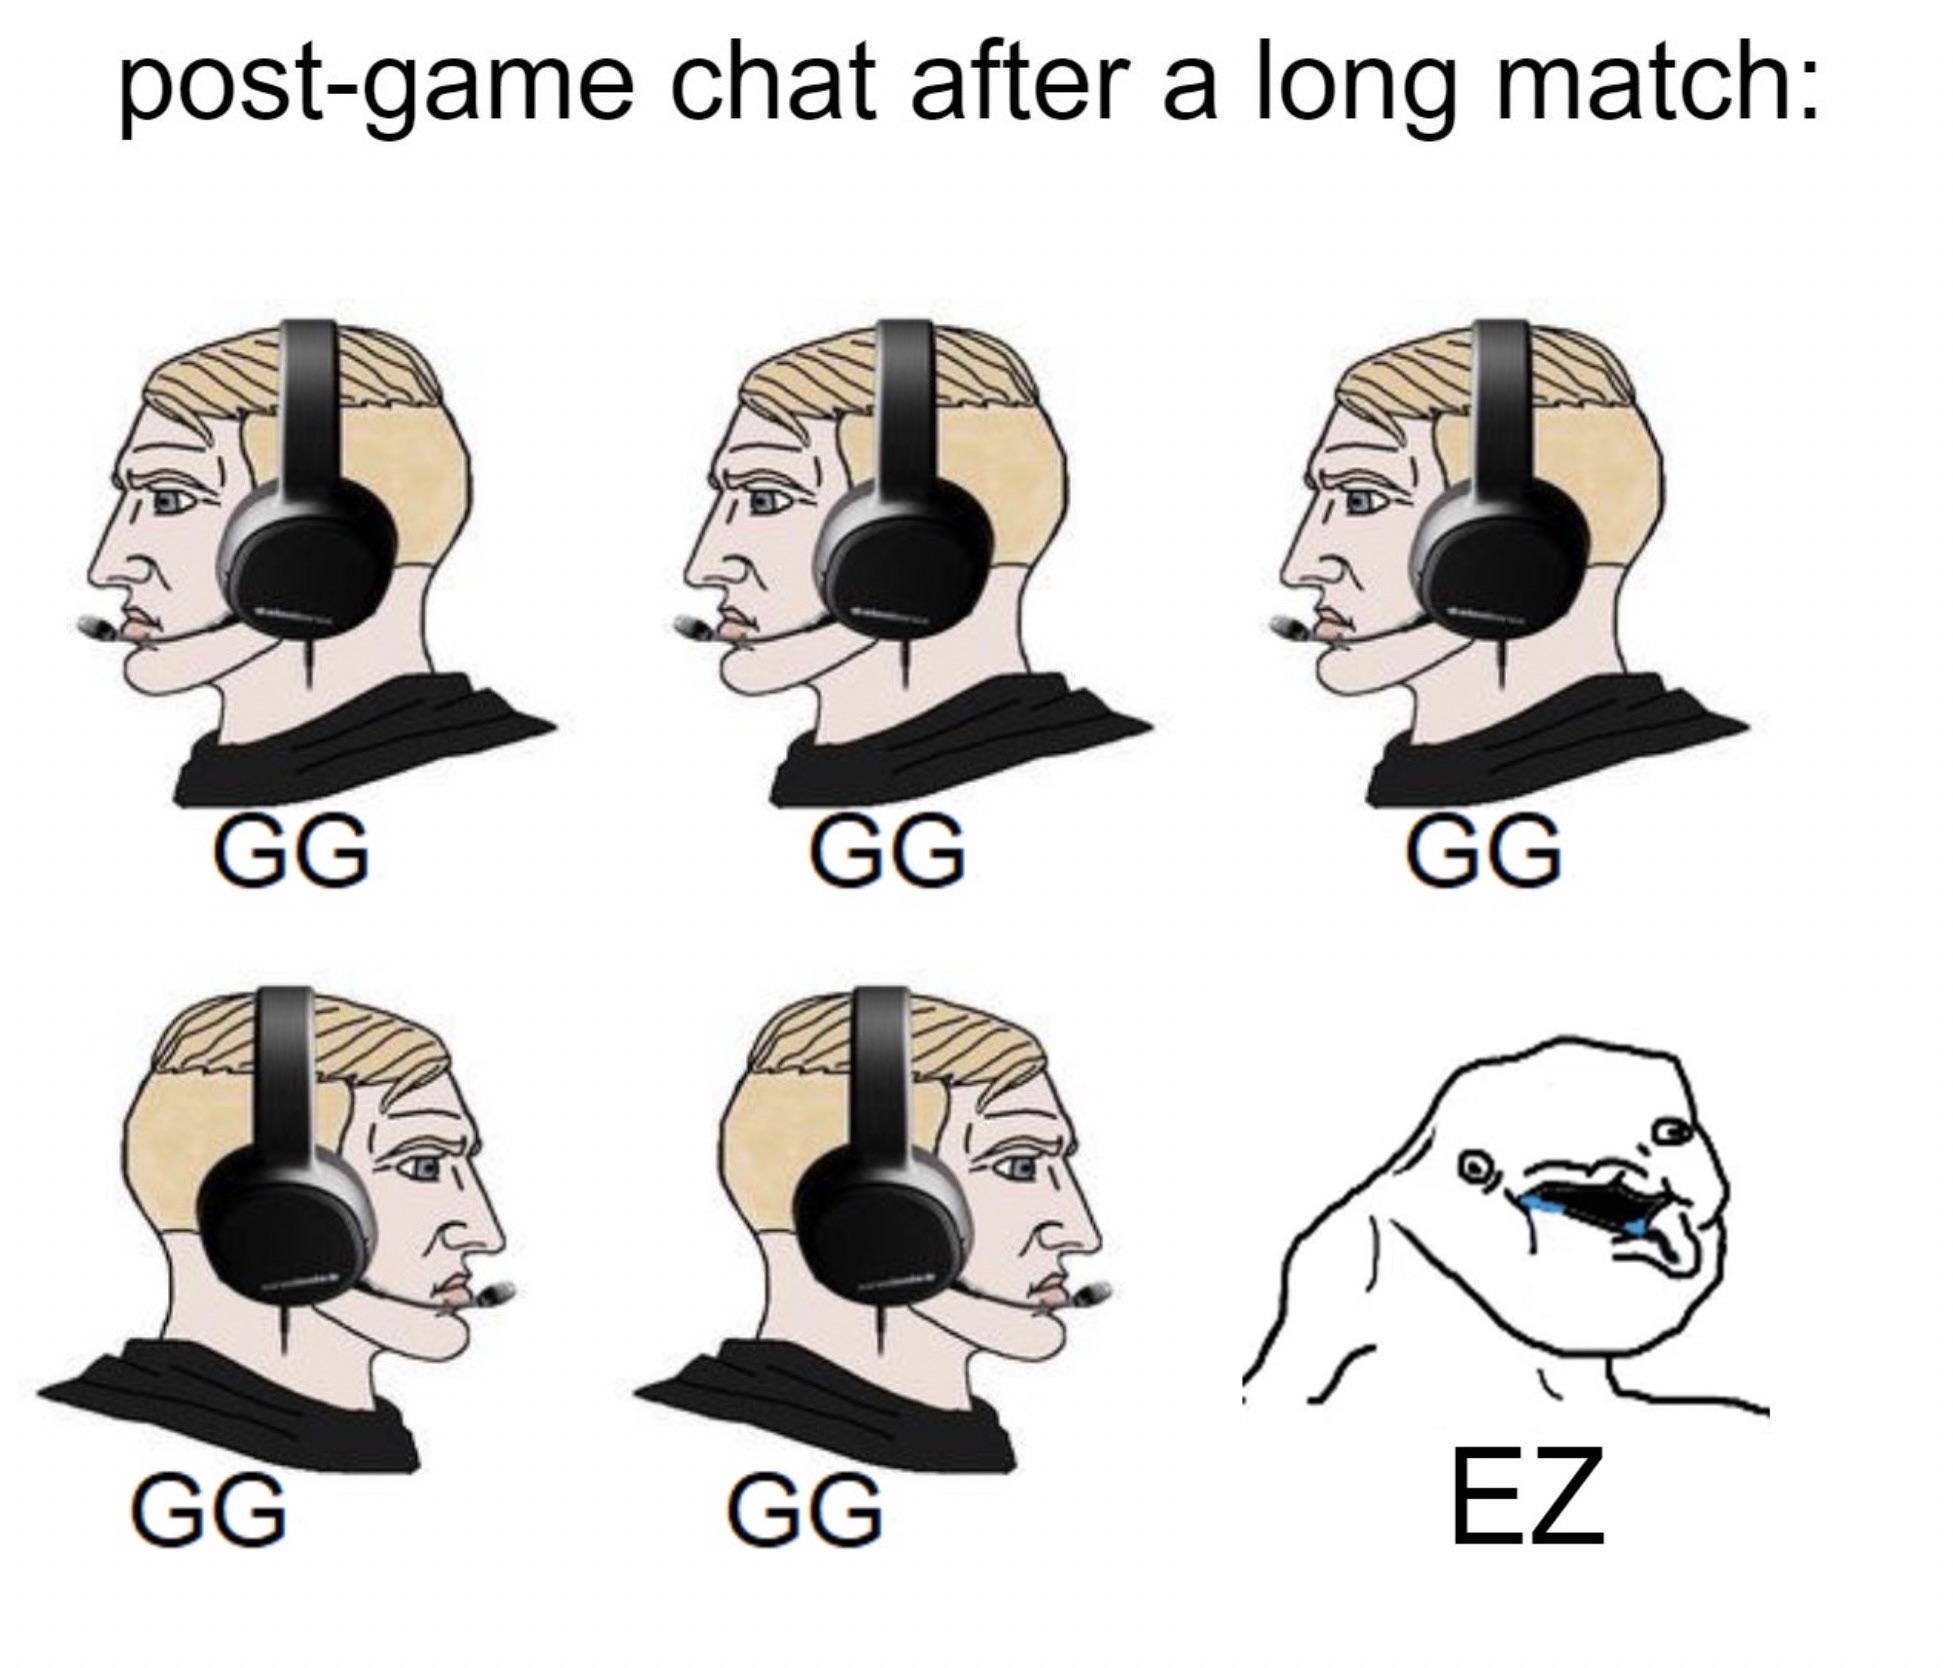 gg gg gg ez meme - postgame chat after a long match Gg Gg Gg Gg Gg Ez